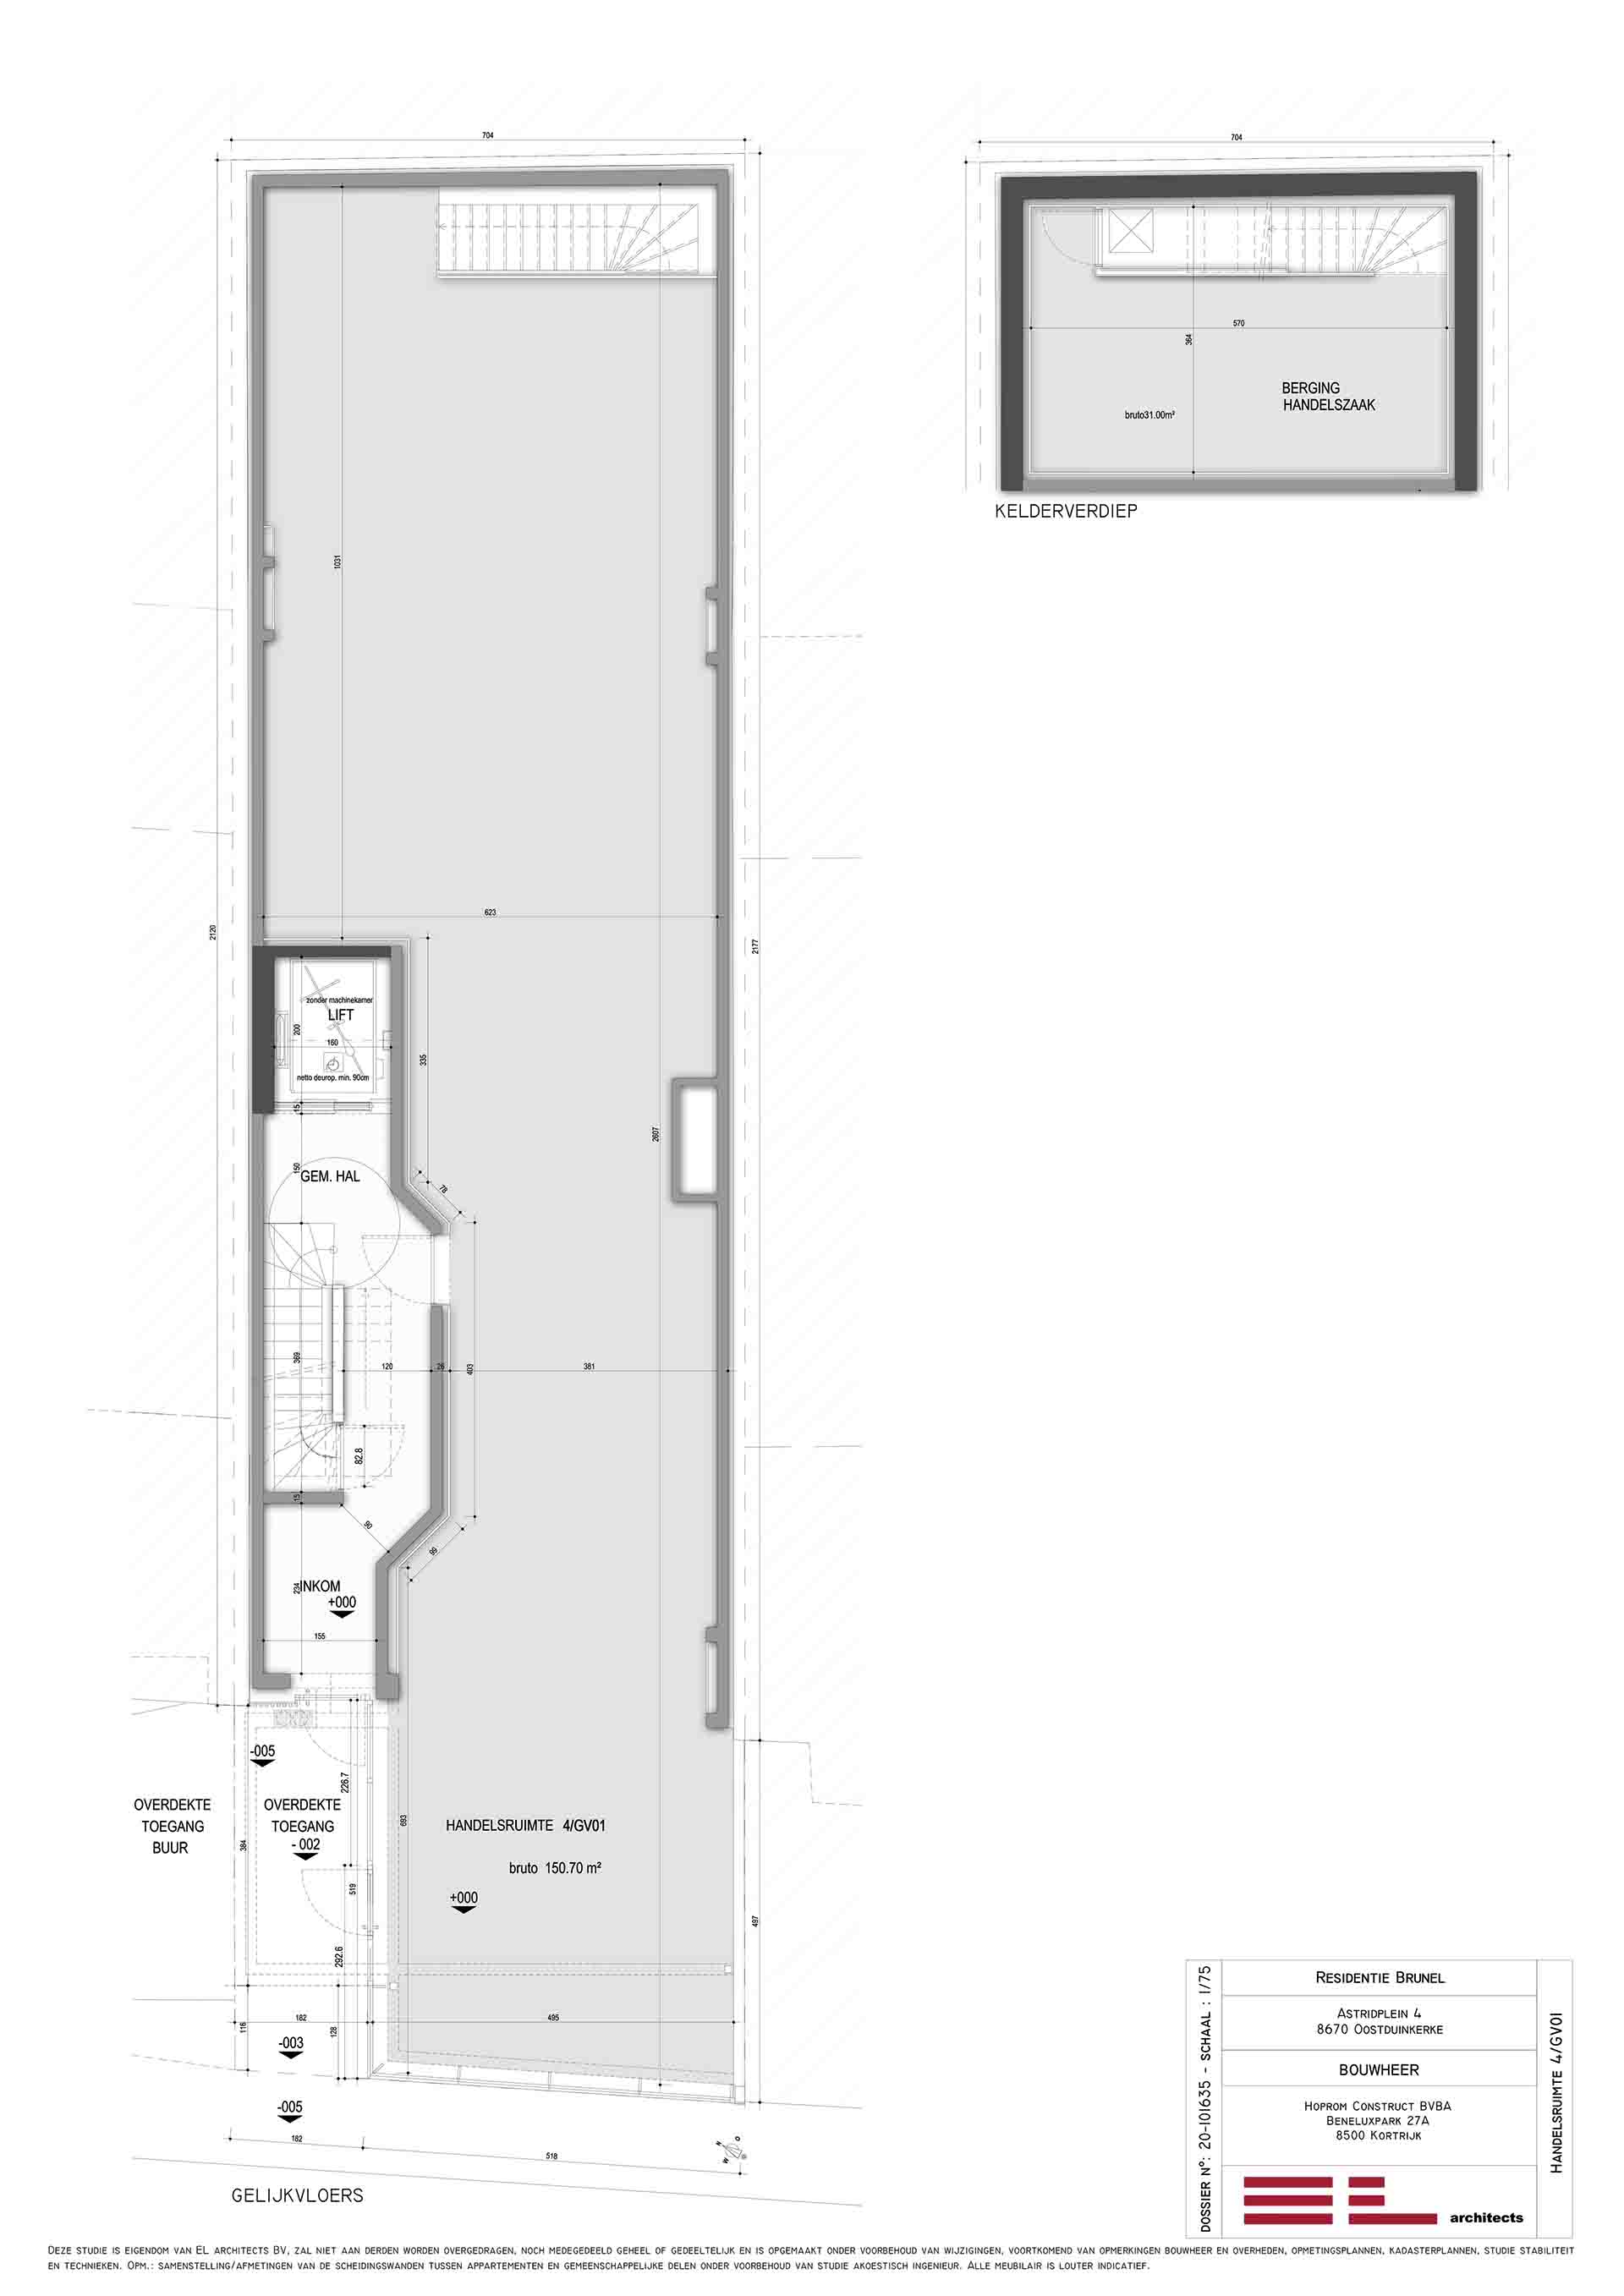 Residentie <br/> Brunel - image appartement-te-koop-oostduinkerke-residentie-brunel-plan-handelsruimte on https://hoprom.be